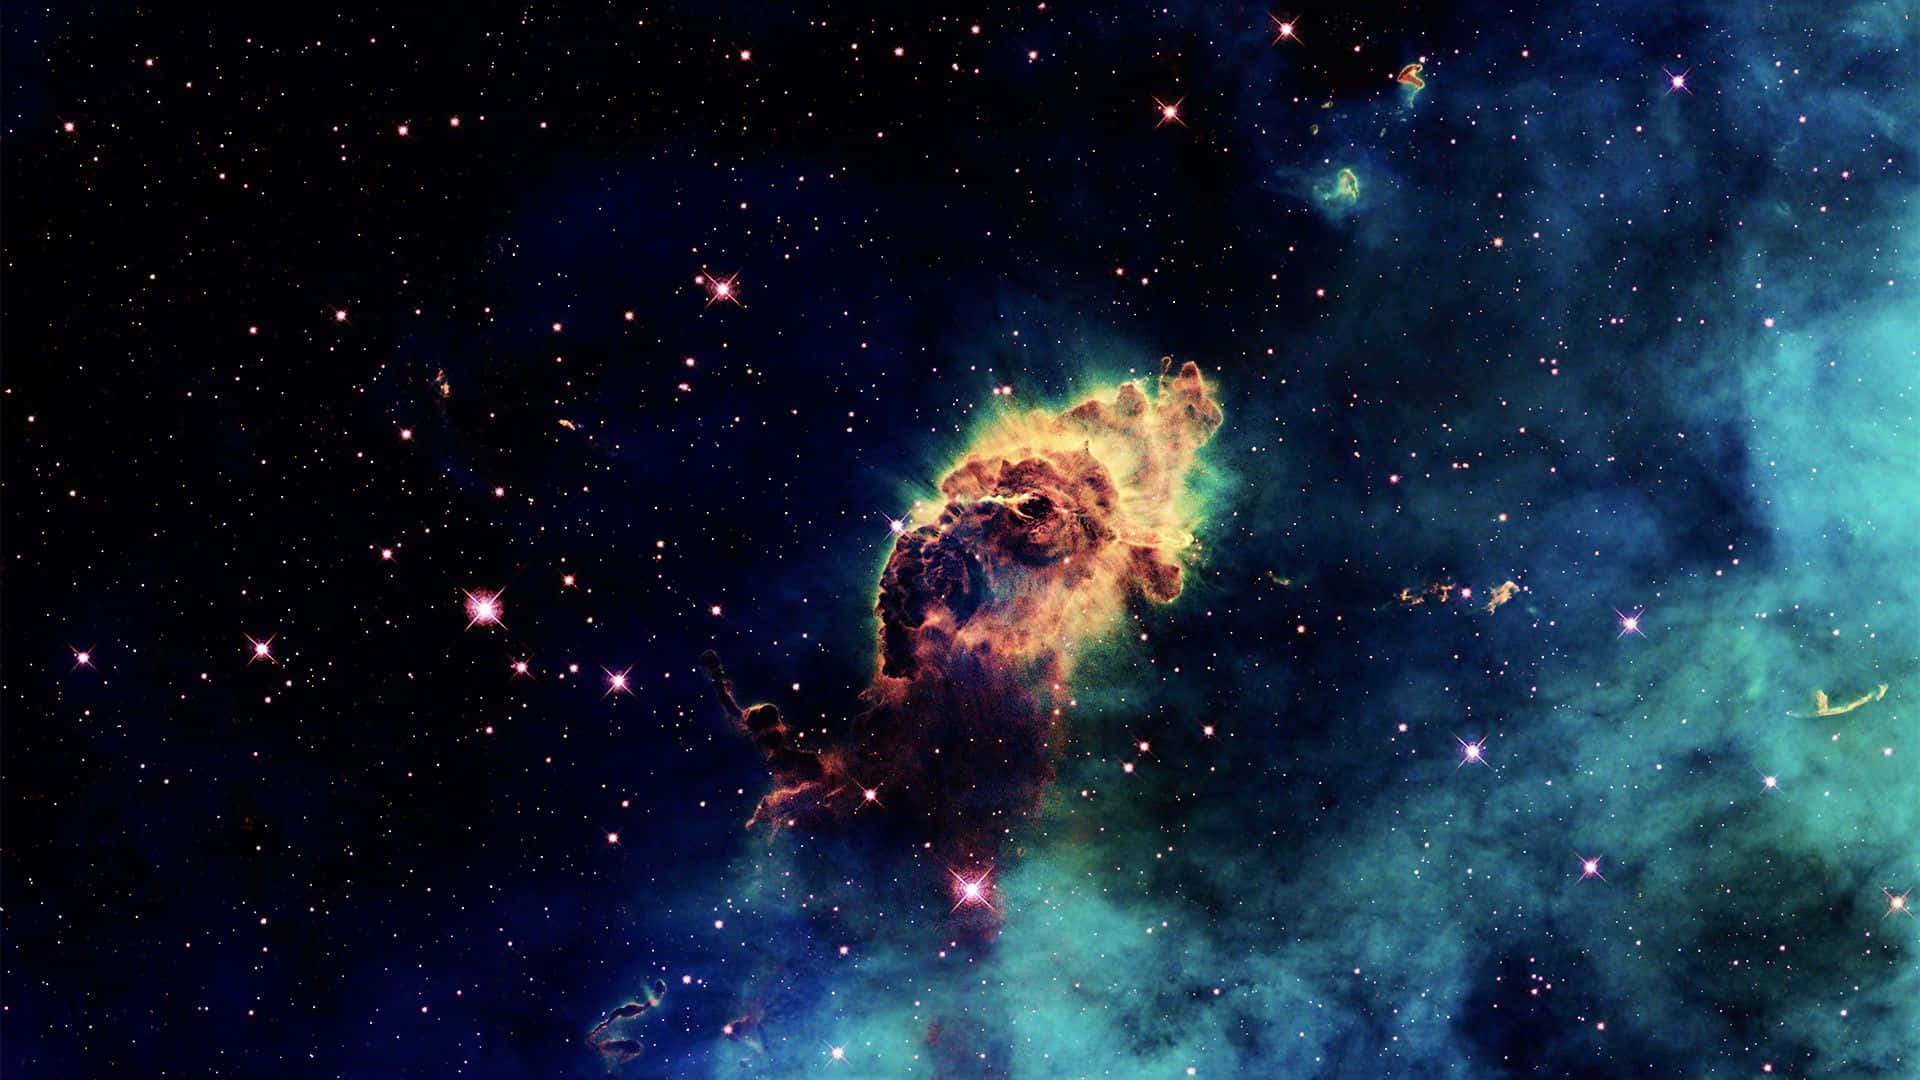 Et åndeløst syn af stjerner og galakser fra rummet. Wallpaper